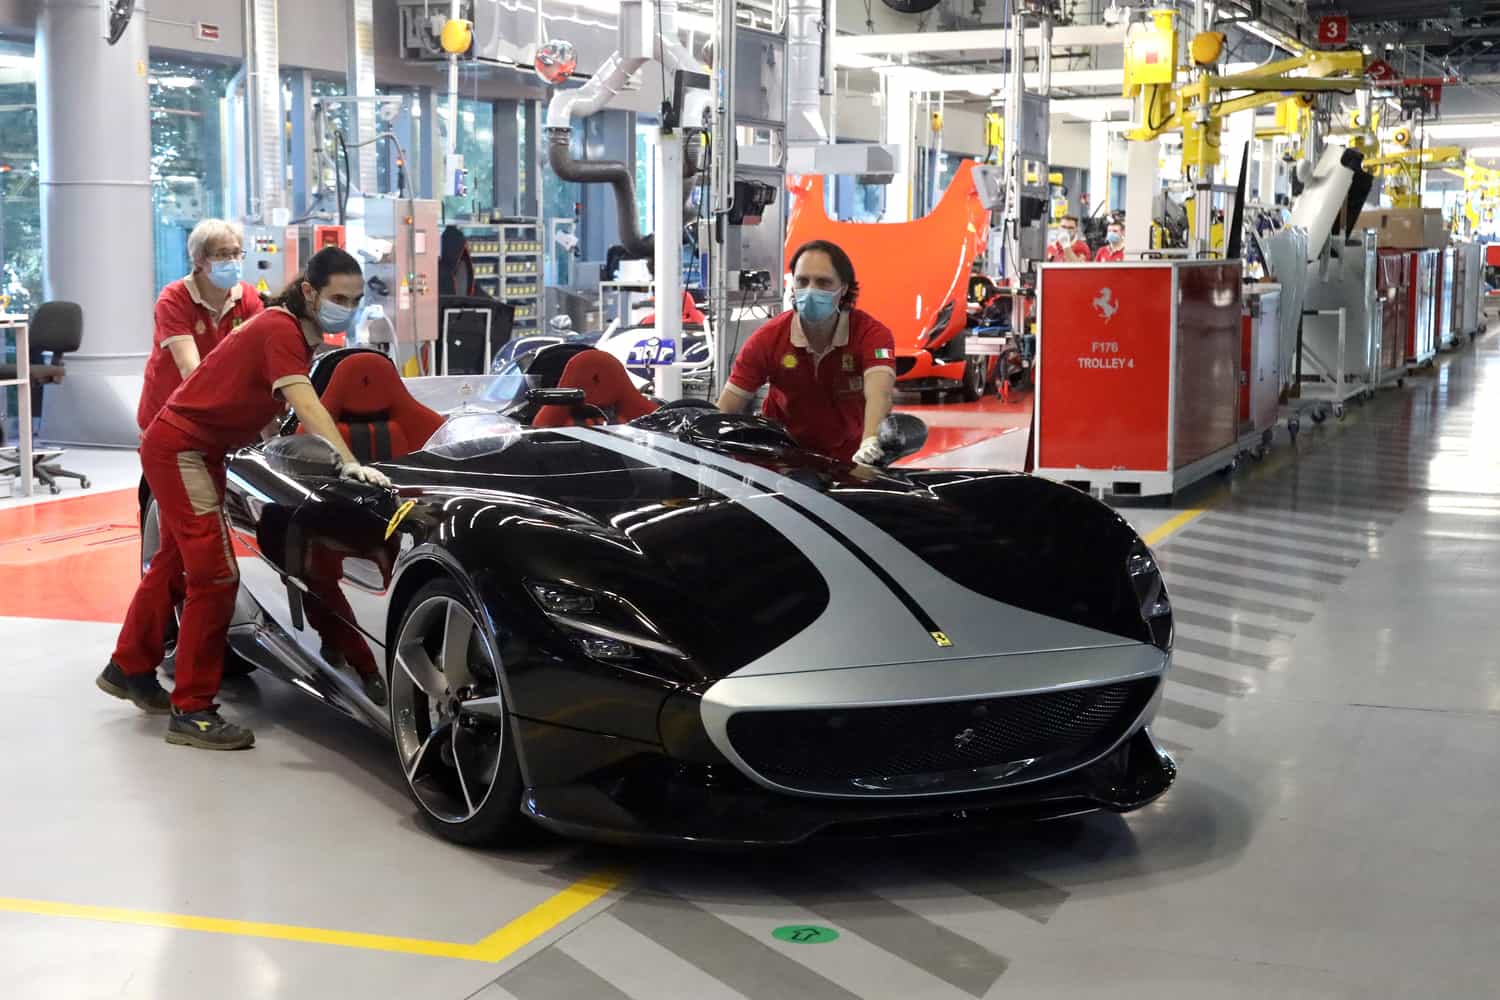 Ferrari riparte veloce come in un GP dopo la chiusura più lunga - produzione - fabbrica - stabilimento - Made in Italy